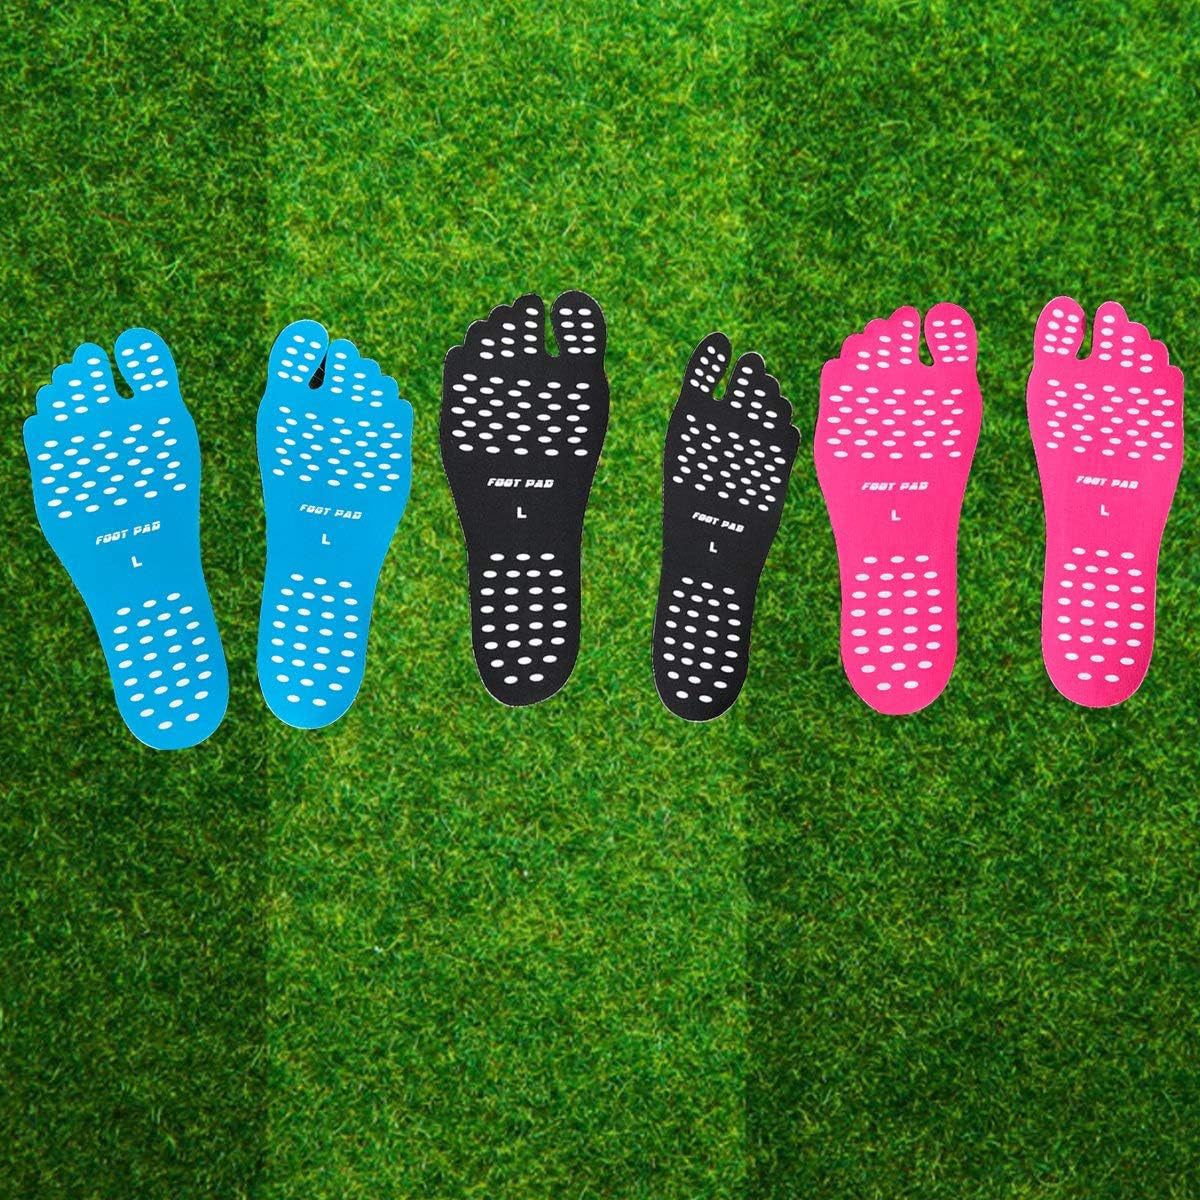 Socks With Grips - Fitness Yoga Socks Non Slip Grip